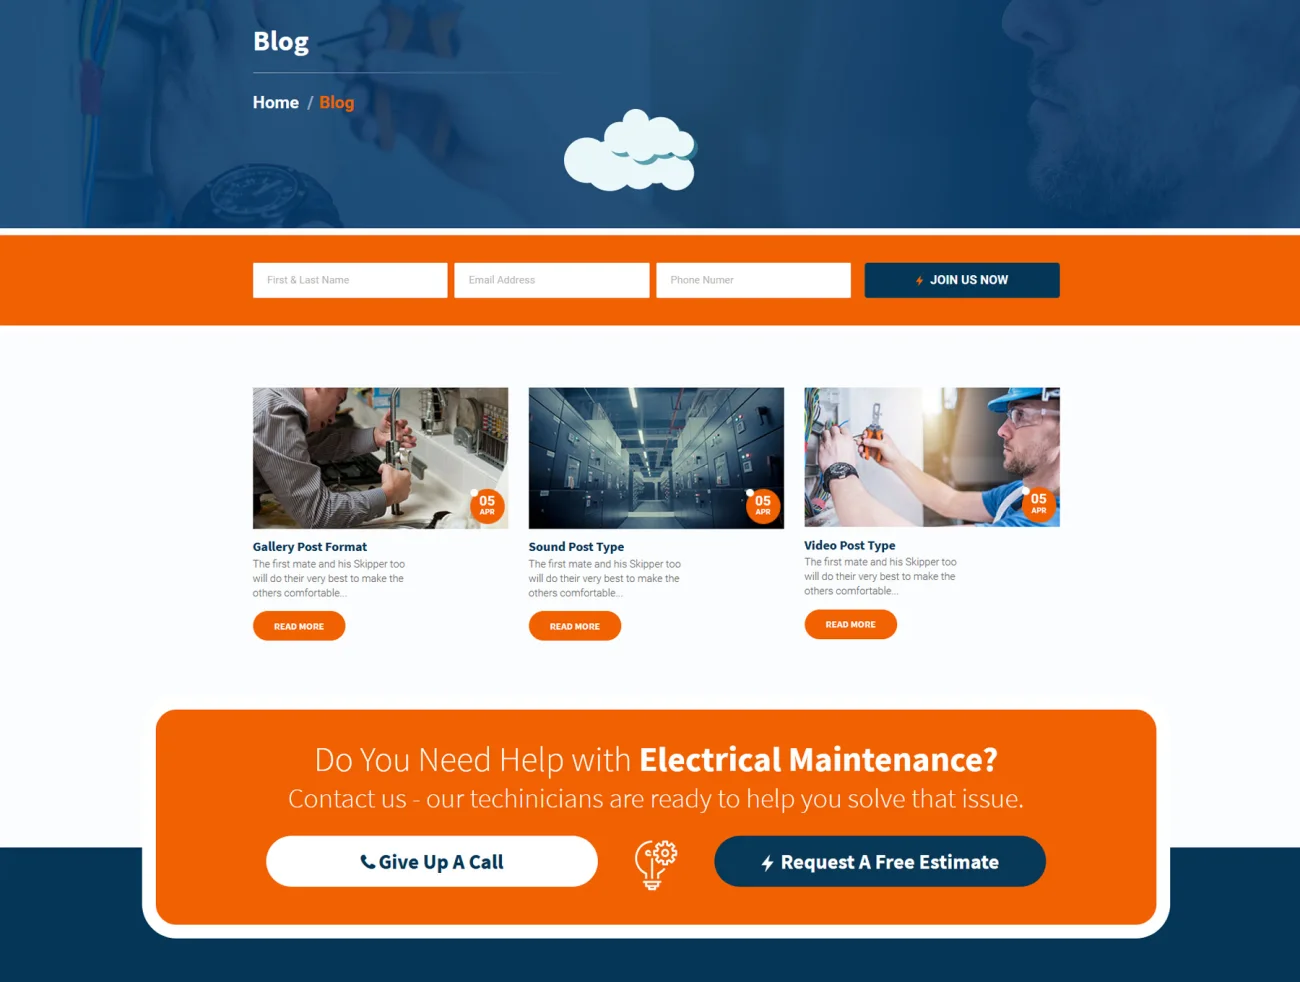 Sparkzone 电力公司O2O维修服务平台企业网站模板-专题页面-到位啦UI